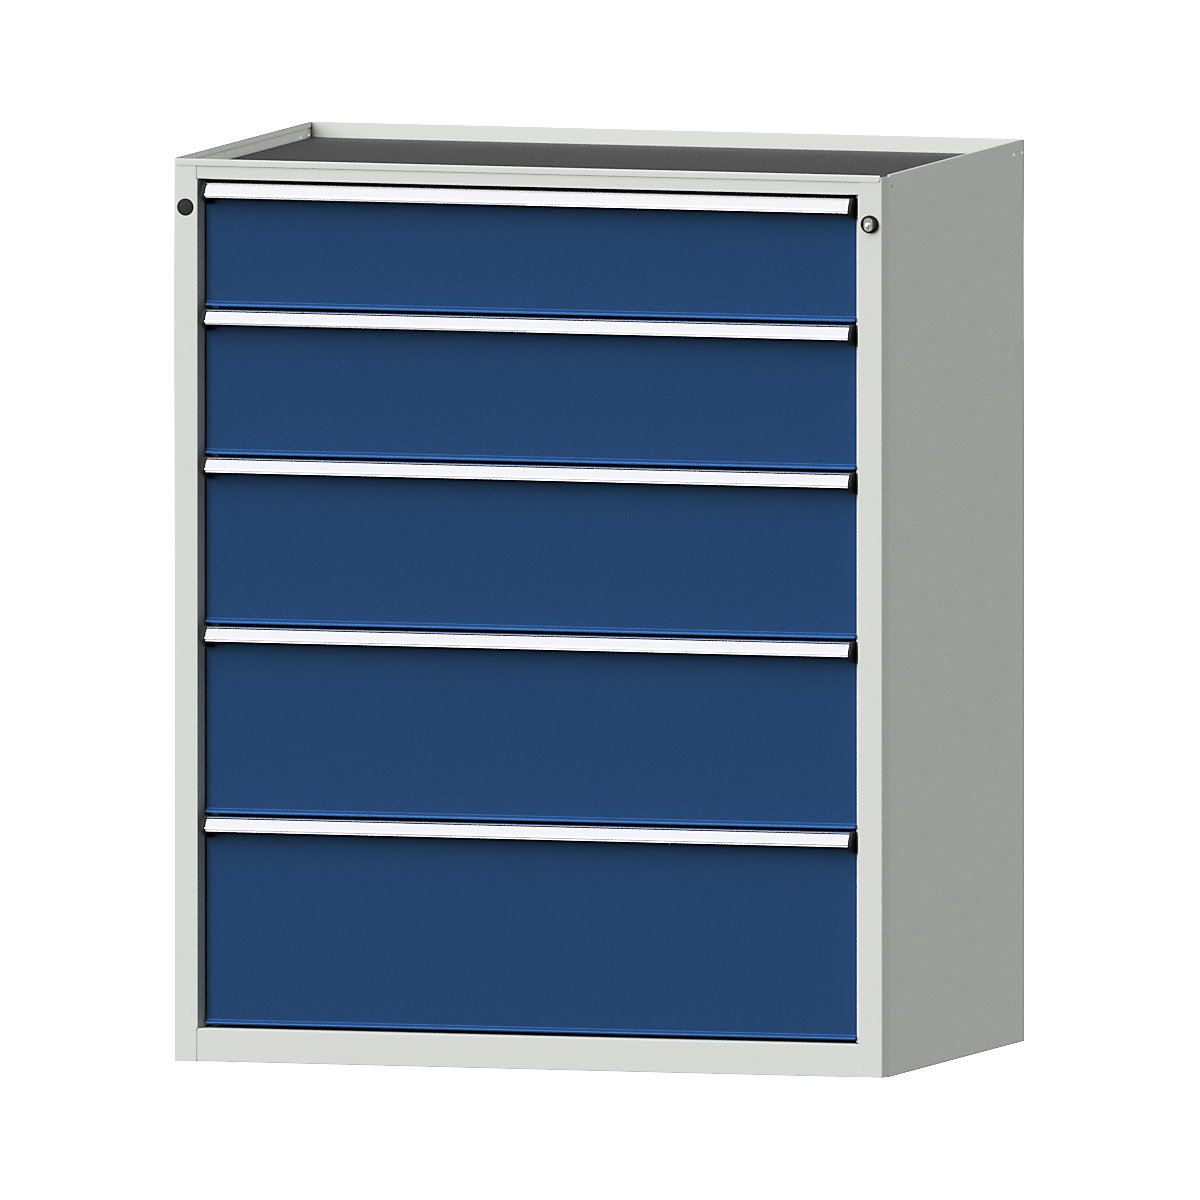 Szafa z szufladami – ANKE, szer. x głęb. 1060 x 675 mm, nośność szuflady 200 kg, 5 szuflad, wys. 1280 mm, front niebieski gencjanowy-8